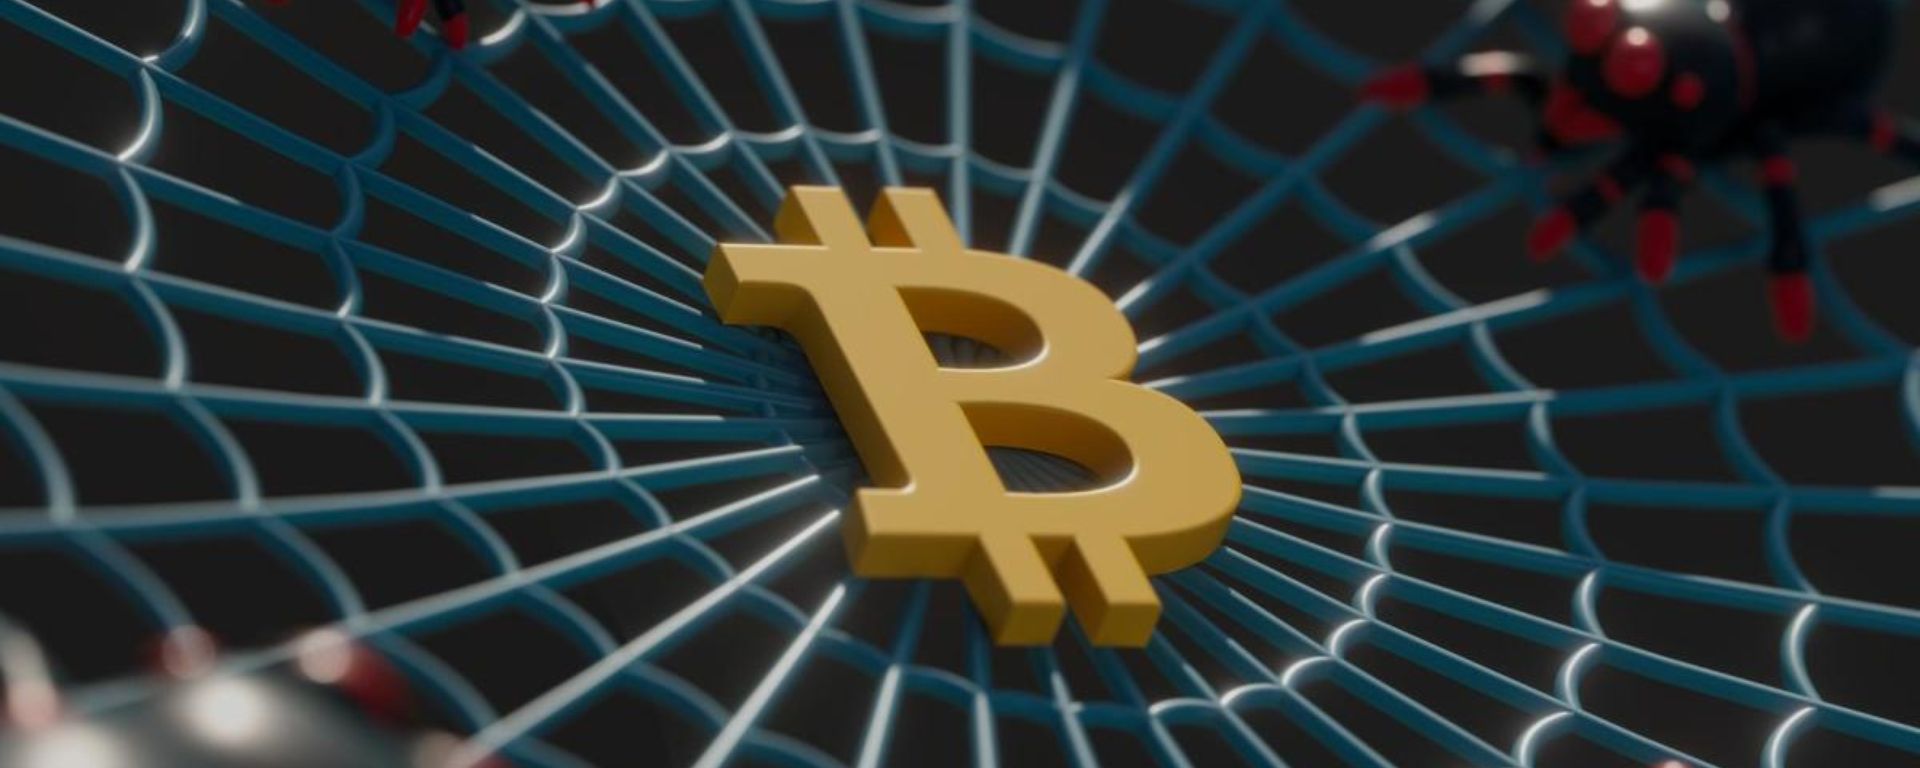 Bitcoin: Análise da queda na alavancagem e seu efeito no mercado - Webitcoin